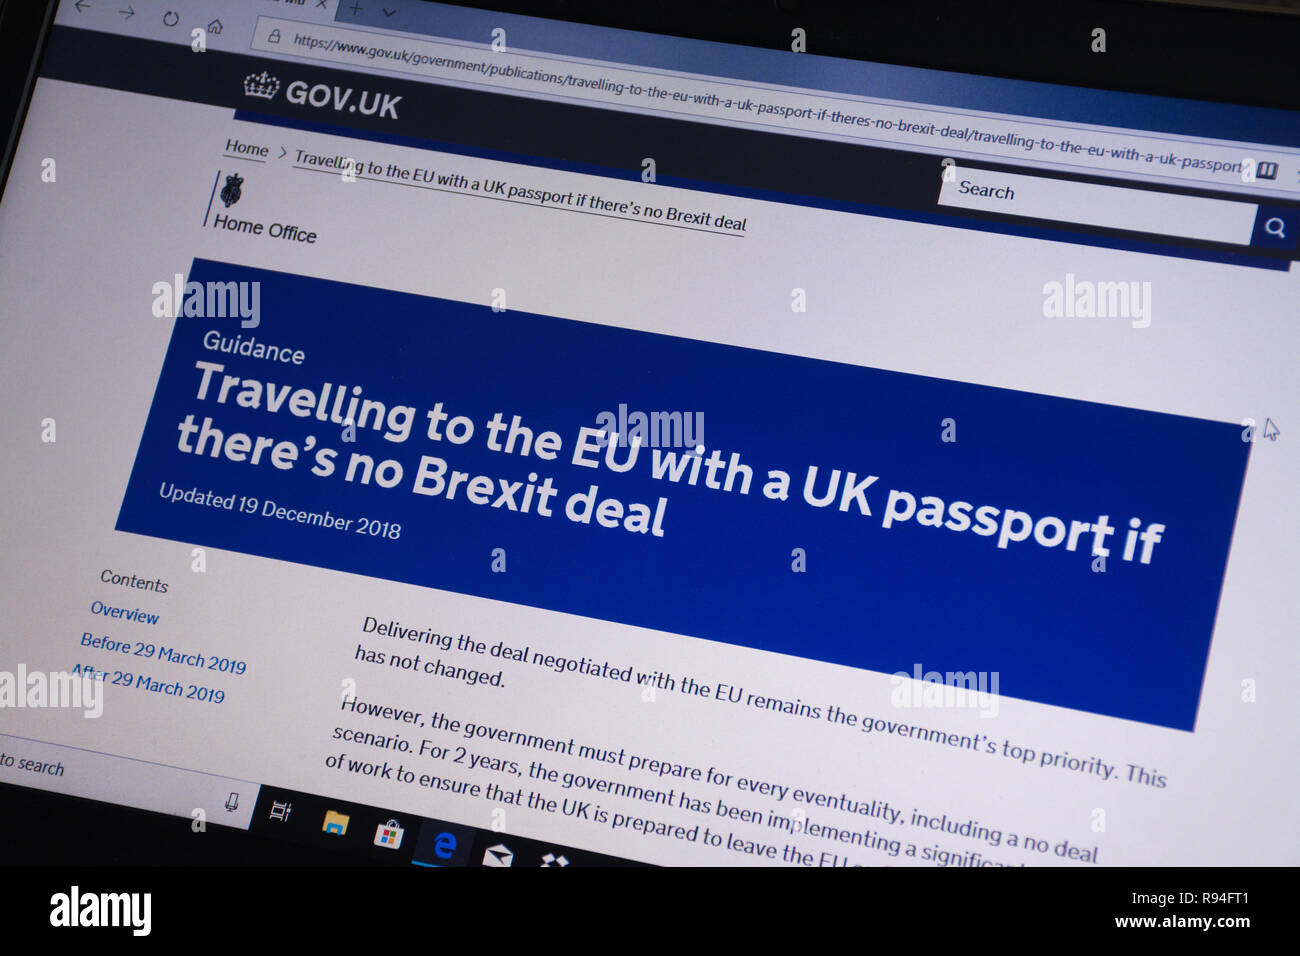 Immagine del calcolatore del gov.uk sito web che mostra i consigli di viaggio per l'UE con un passaporto del Regno Unito se non vi è alcuna trattativa Brexit Foto Stock